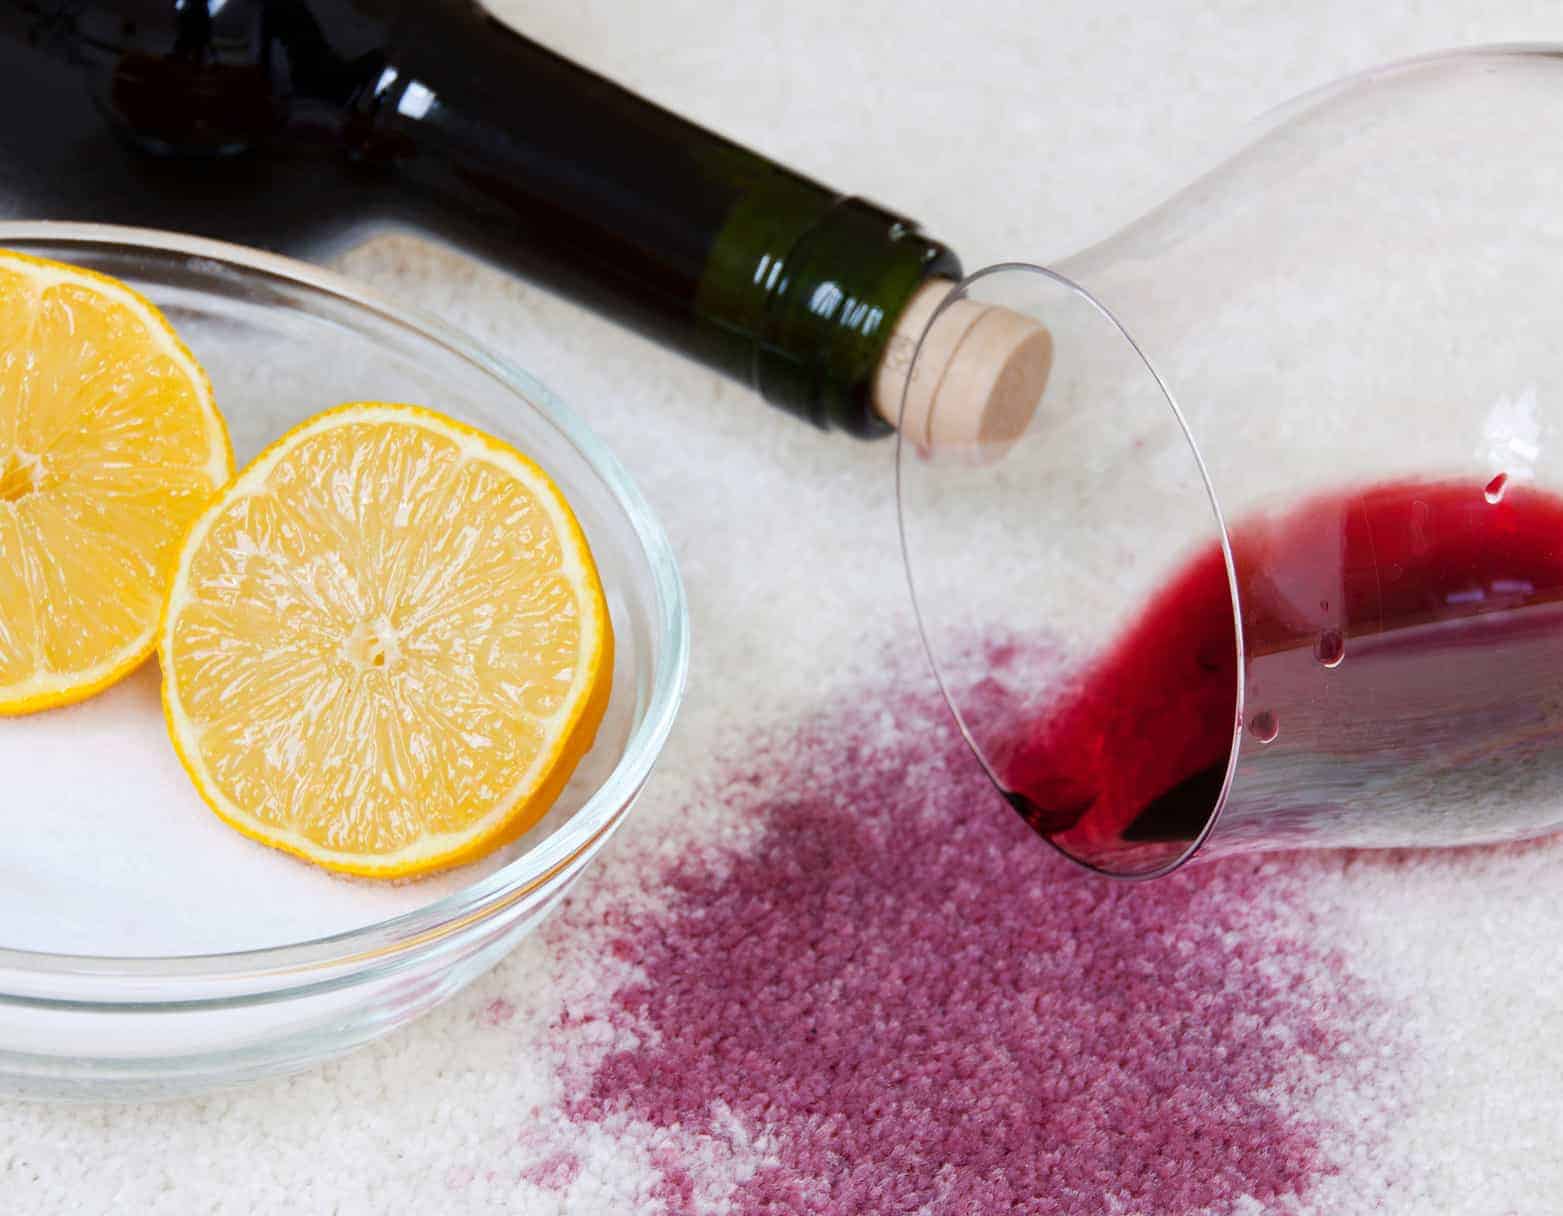 Rotwein, der auf einem weißen Teppich umgekippt ist, hinterlässt fiese Flecken, die man mit Hausmitteln gut entfernen kann.